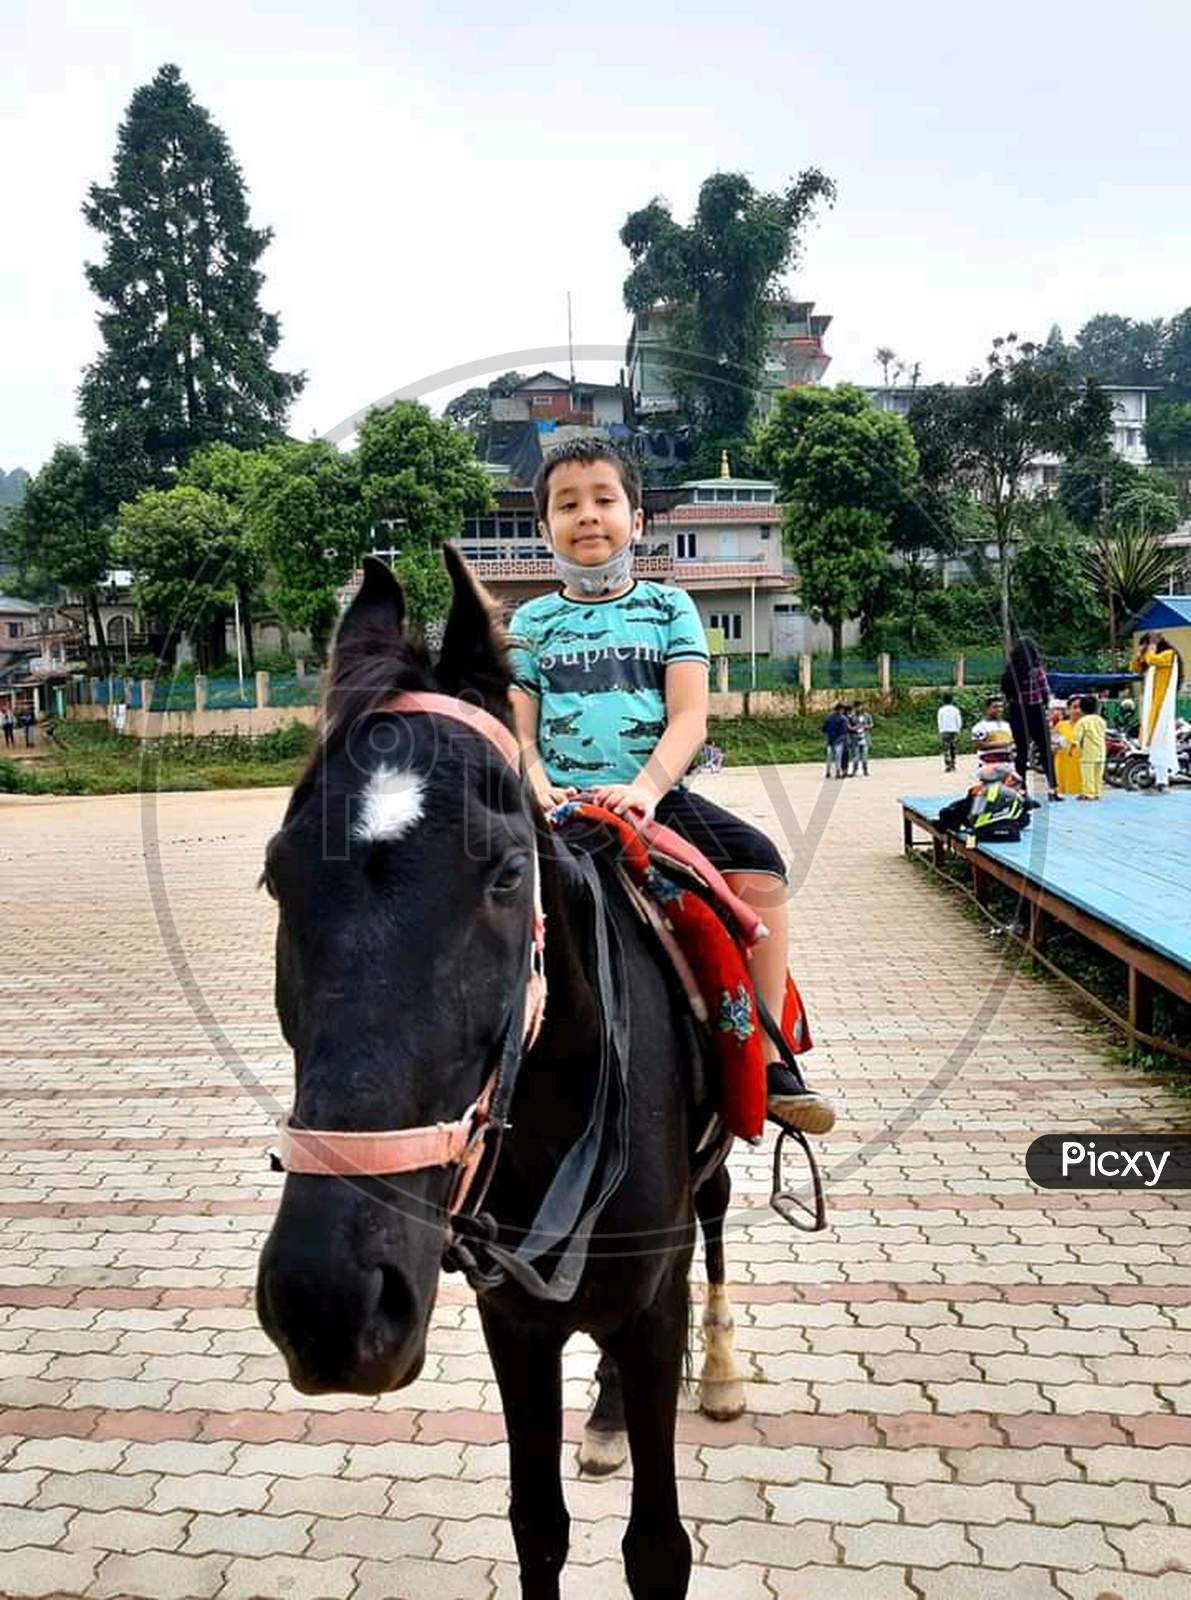 A boy riding horse